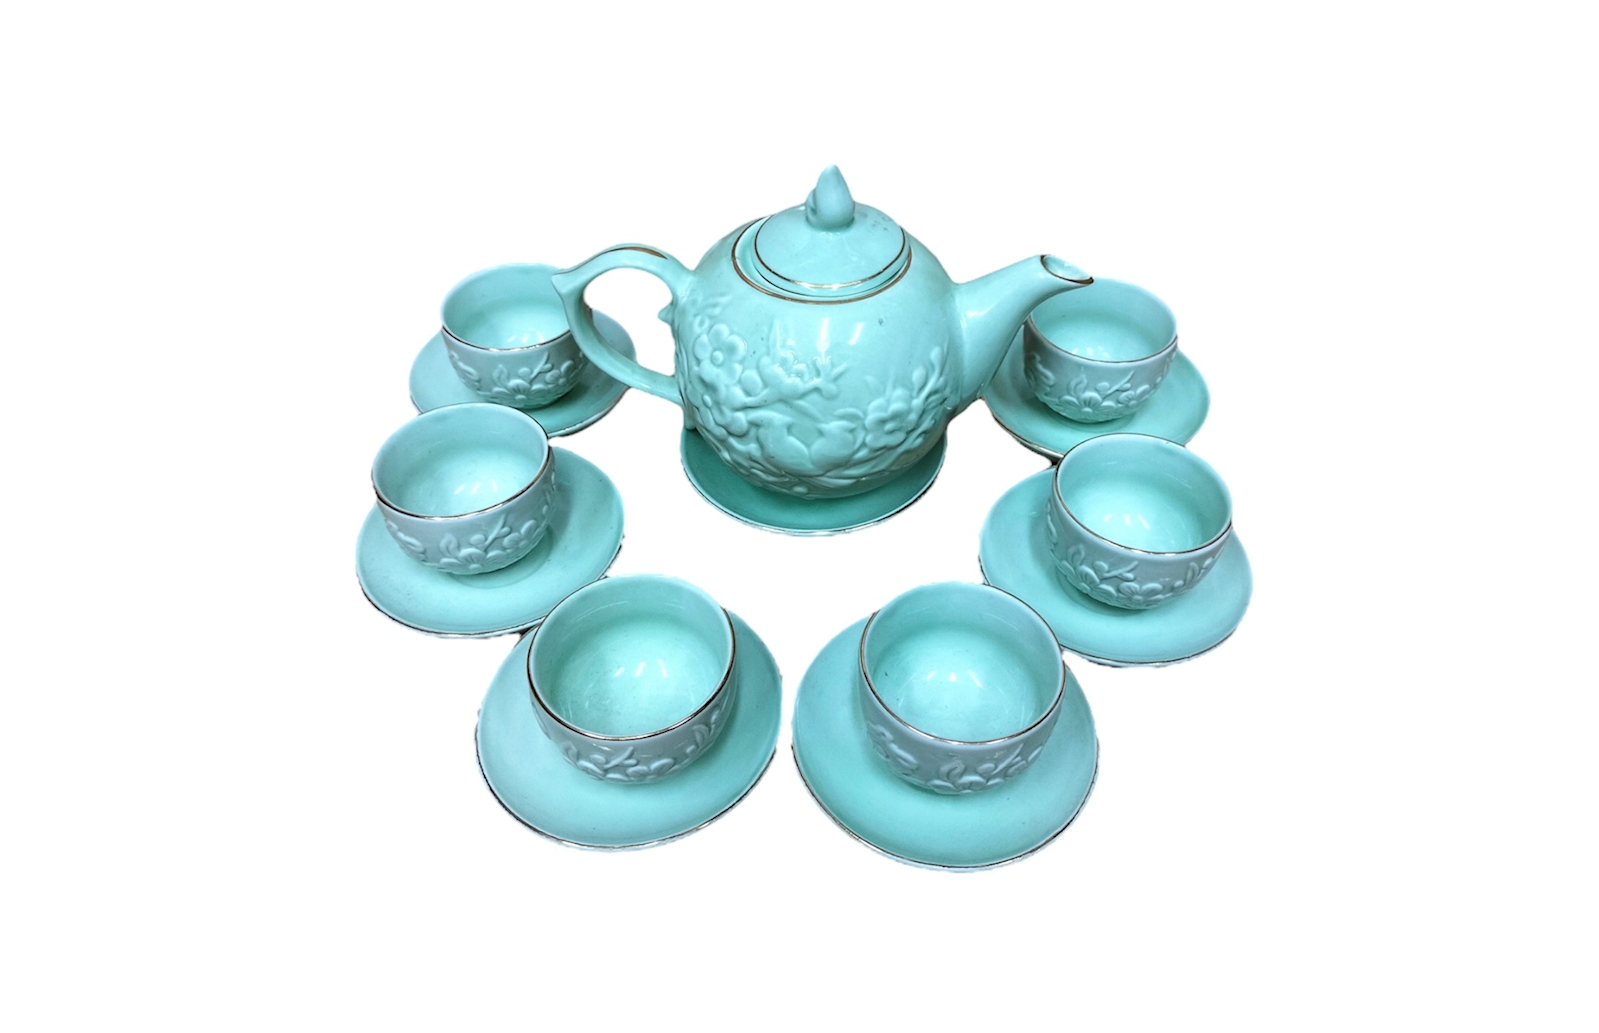 Bộ bình trà men xanh ngọc, mã 115361, đắp nổi 3D chim hoa đào, gốm sứ bát tràng tinh vân